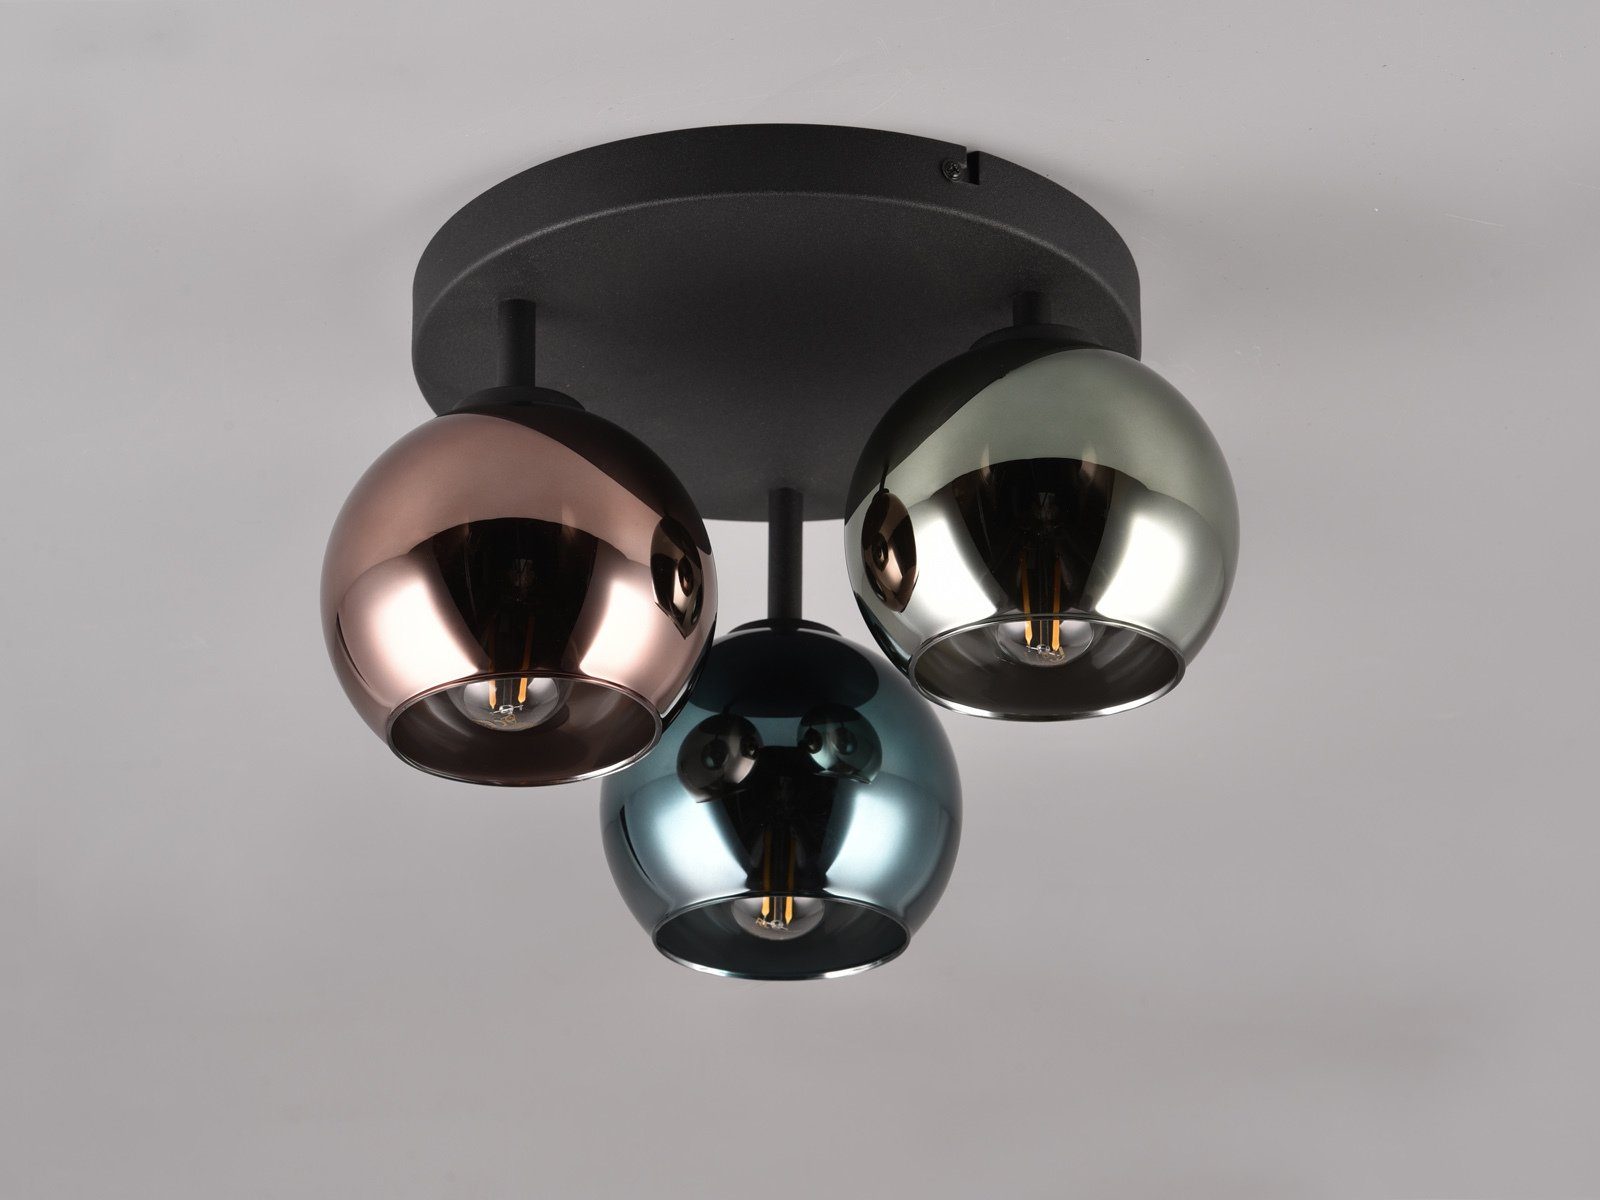 Glas-kugel Lampenschirm-e warmweiß, Design-er Deckenleuchte, Ø33cm wechselbar, LED ausgefallen-e Esstisch, für meineWunschleuchte LED